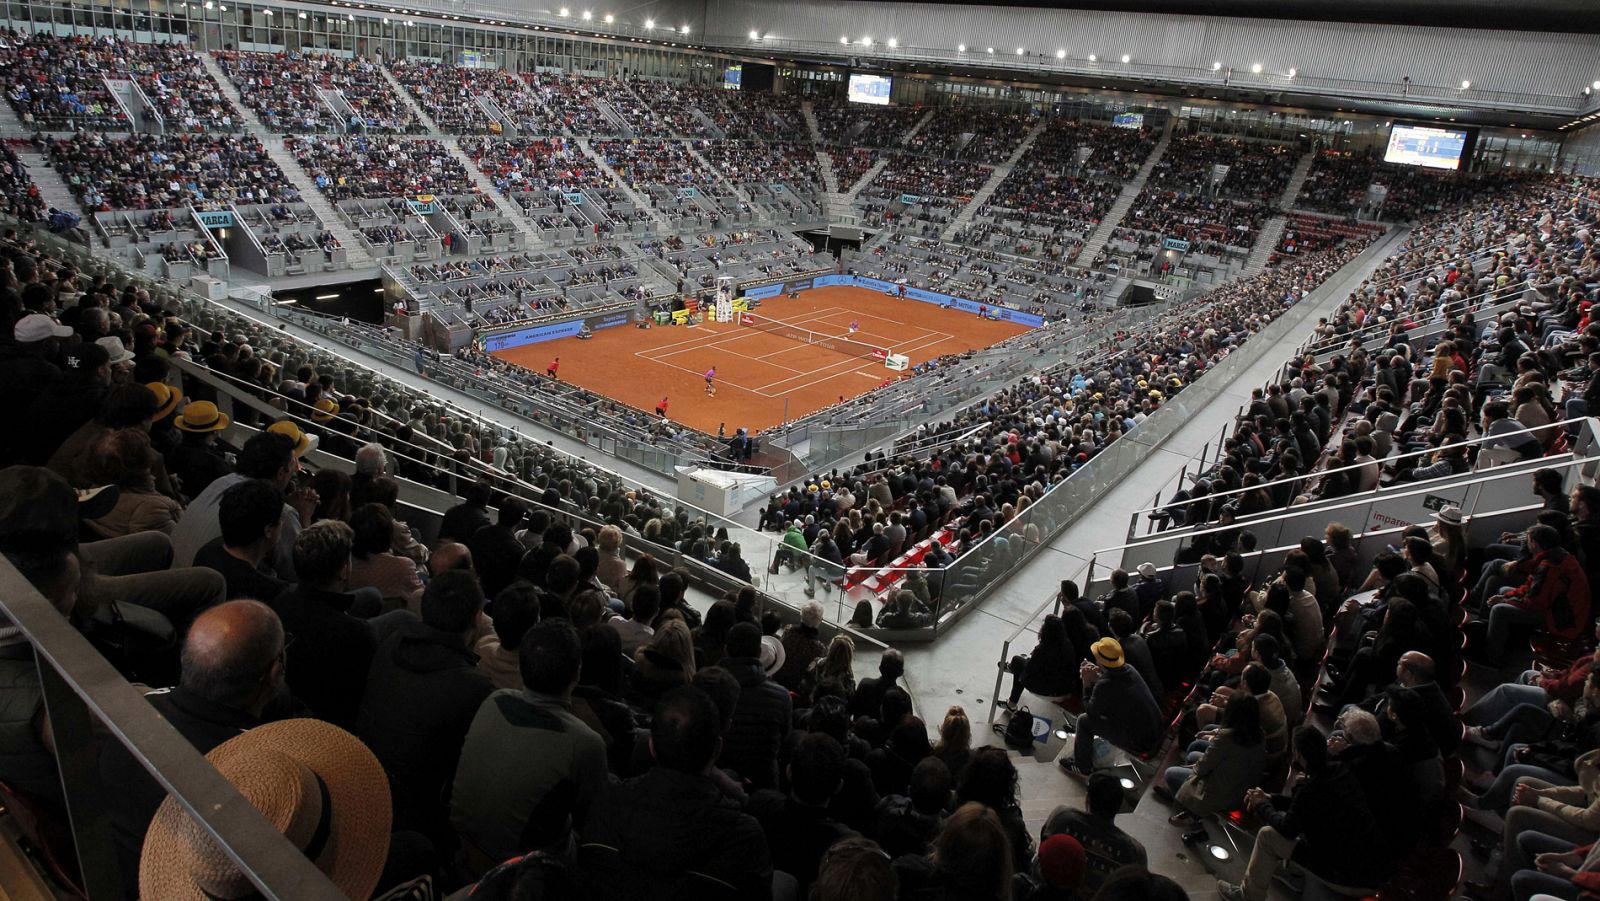 Vista general de la pista central Manolo Santana del Madrid Open.